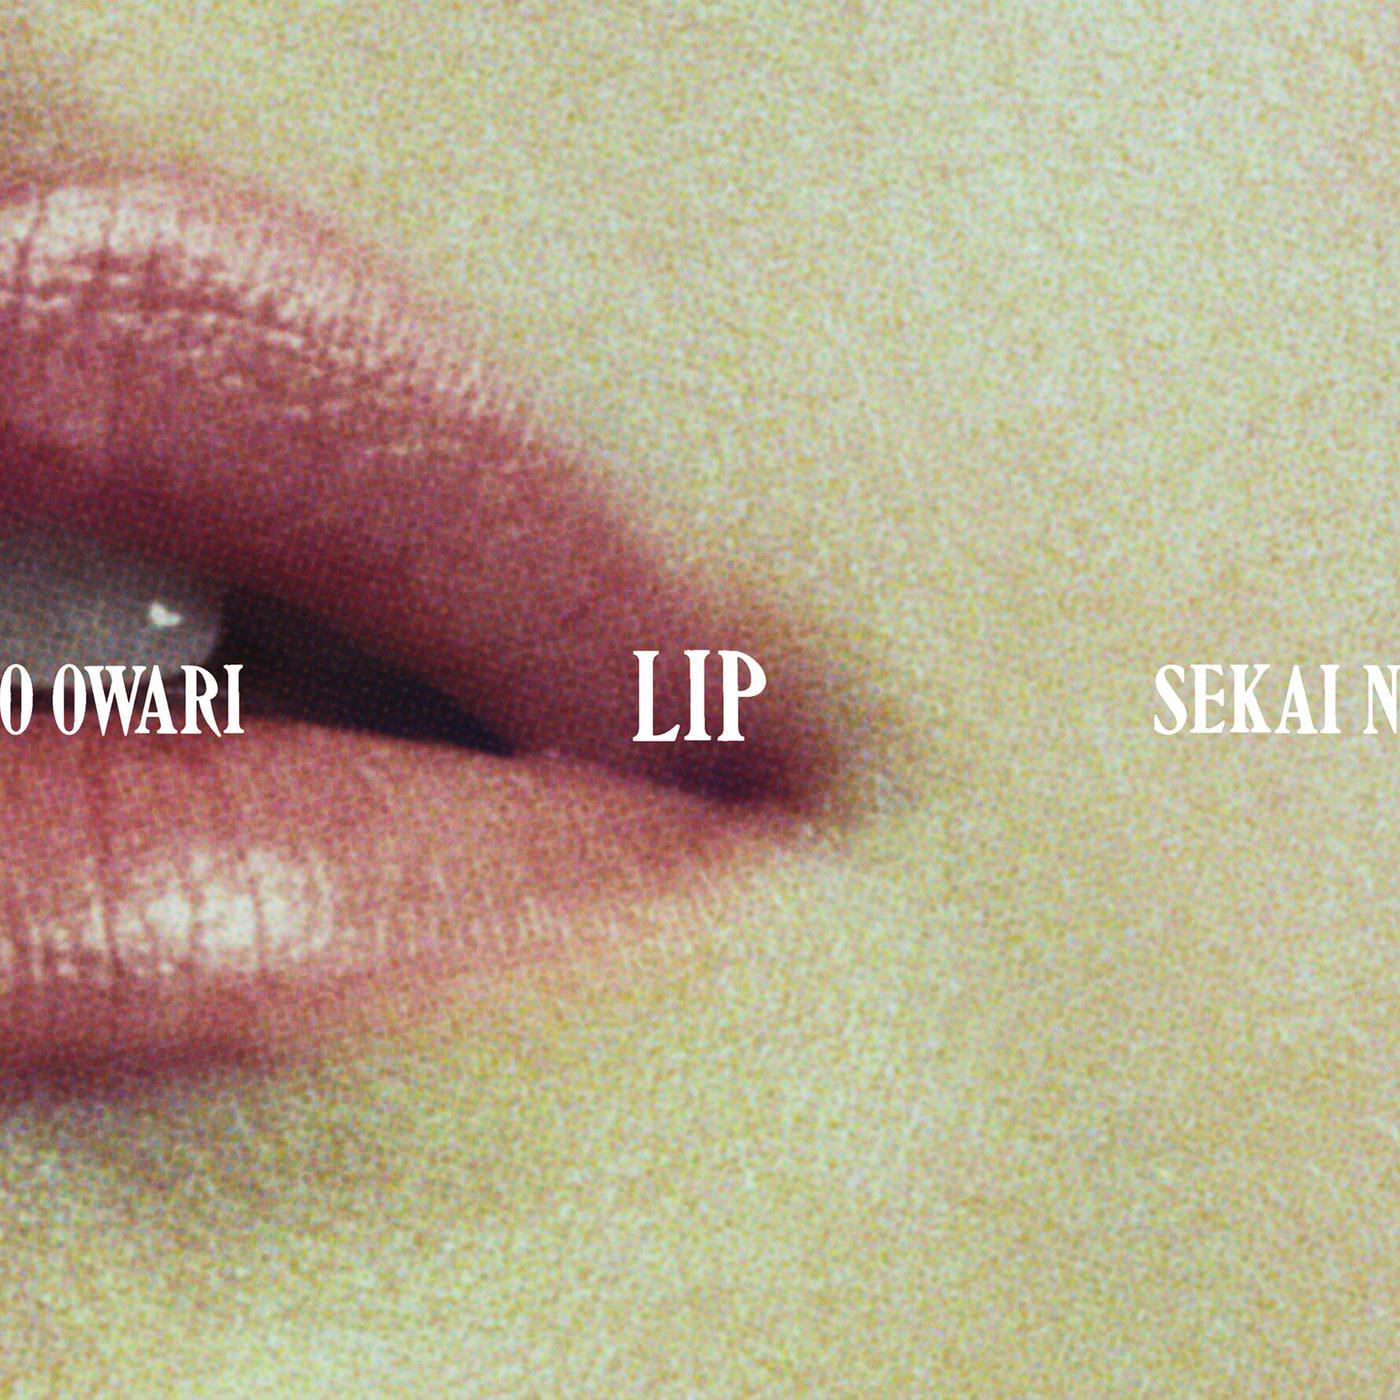 ラフレシア歌词 歌手Sekai no Owari-专辑Lip-单曲《ラフレシア》LRC歌词下载